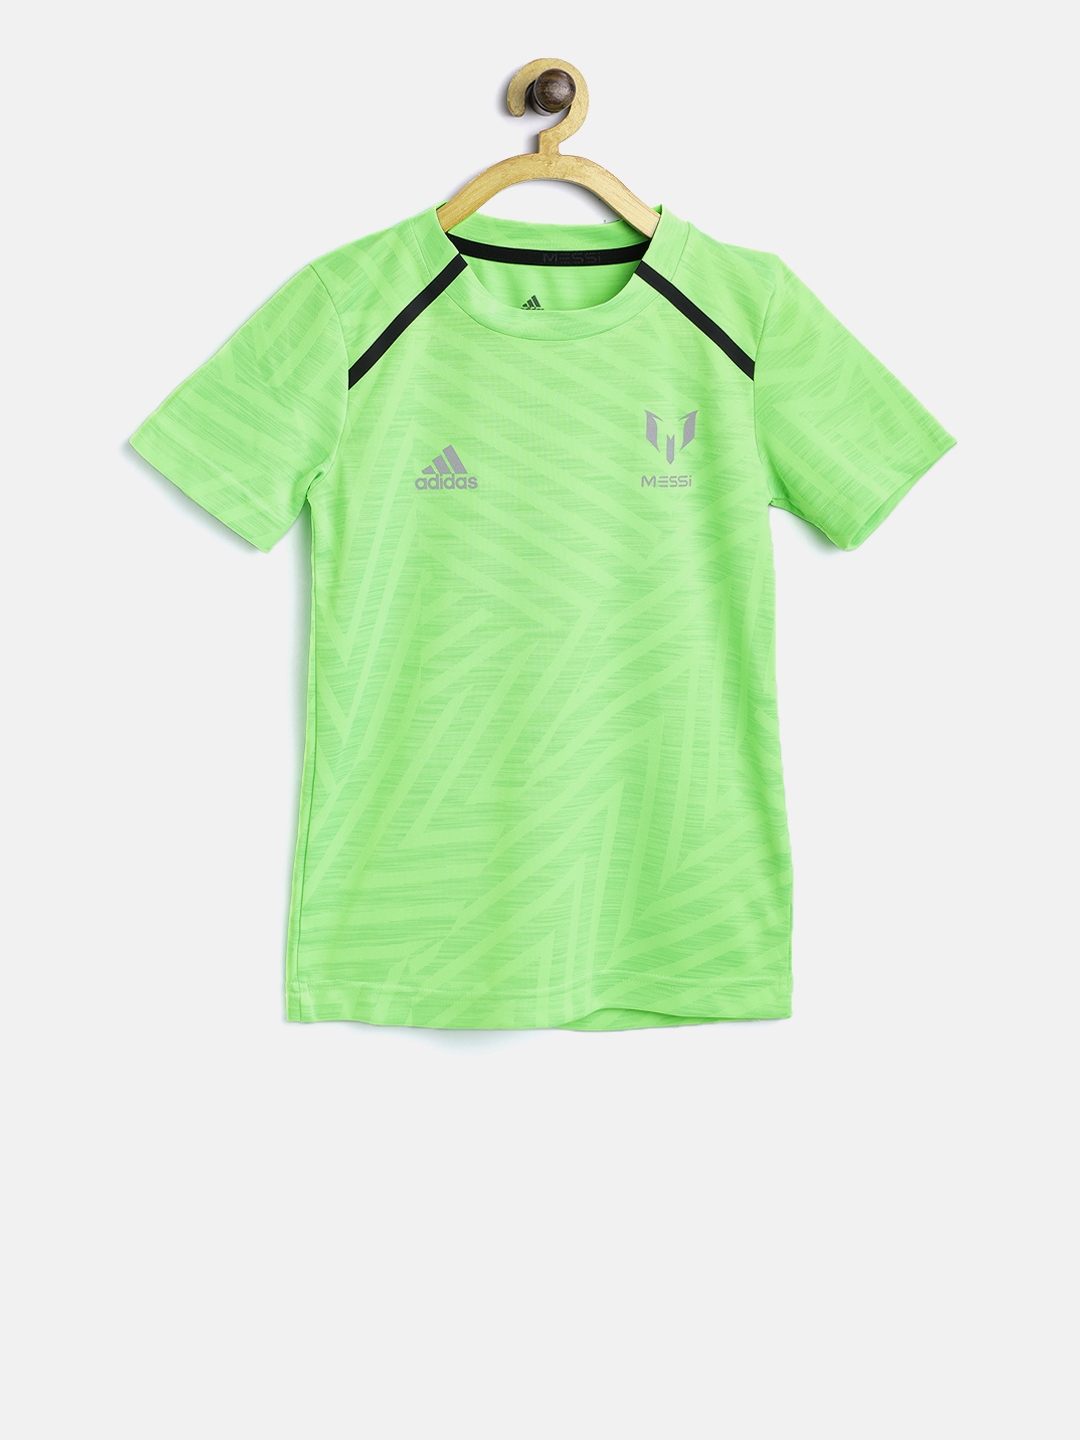 adidas fluorescent green t shirt